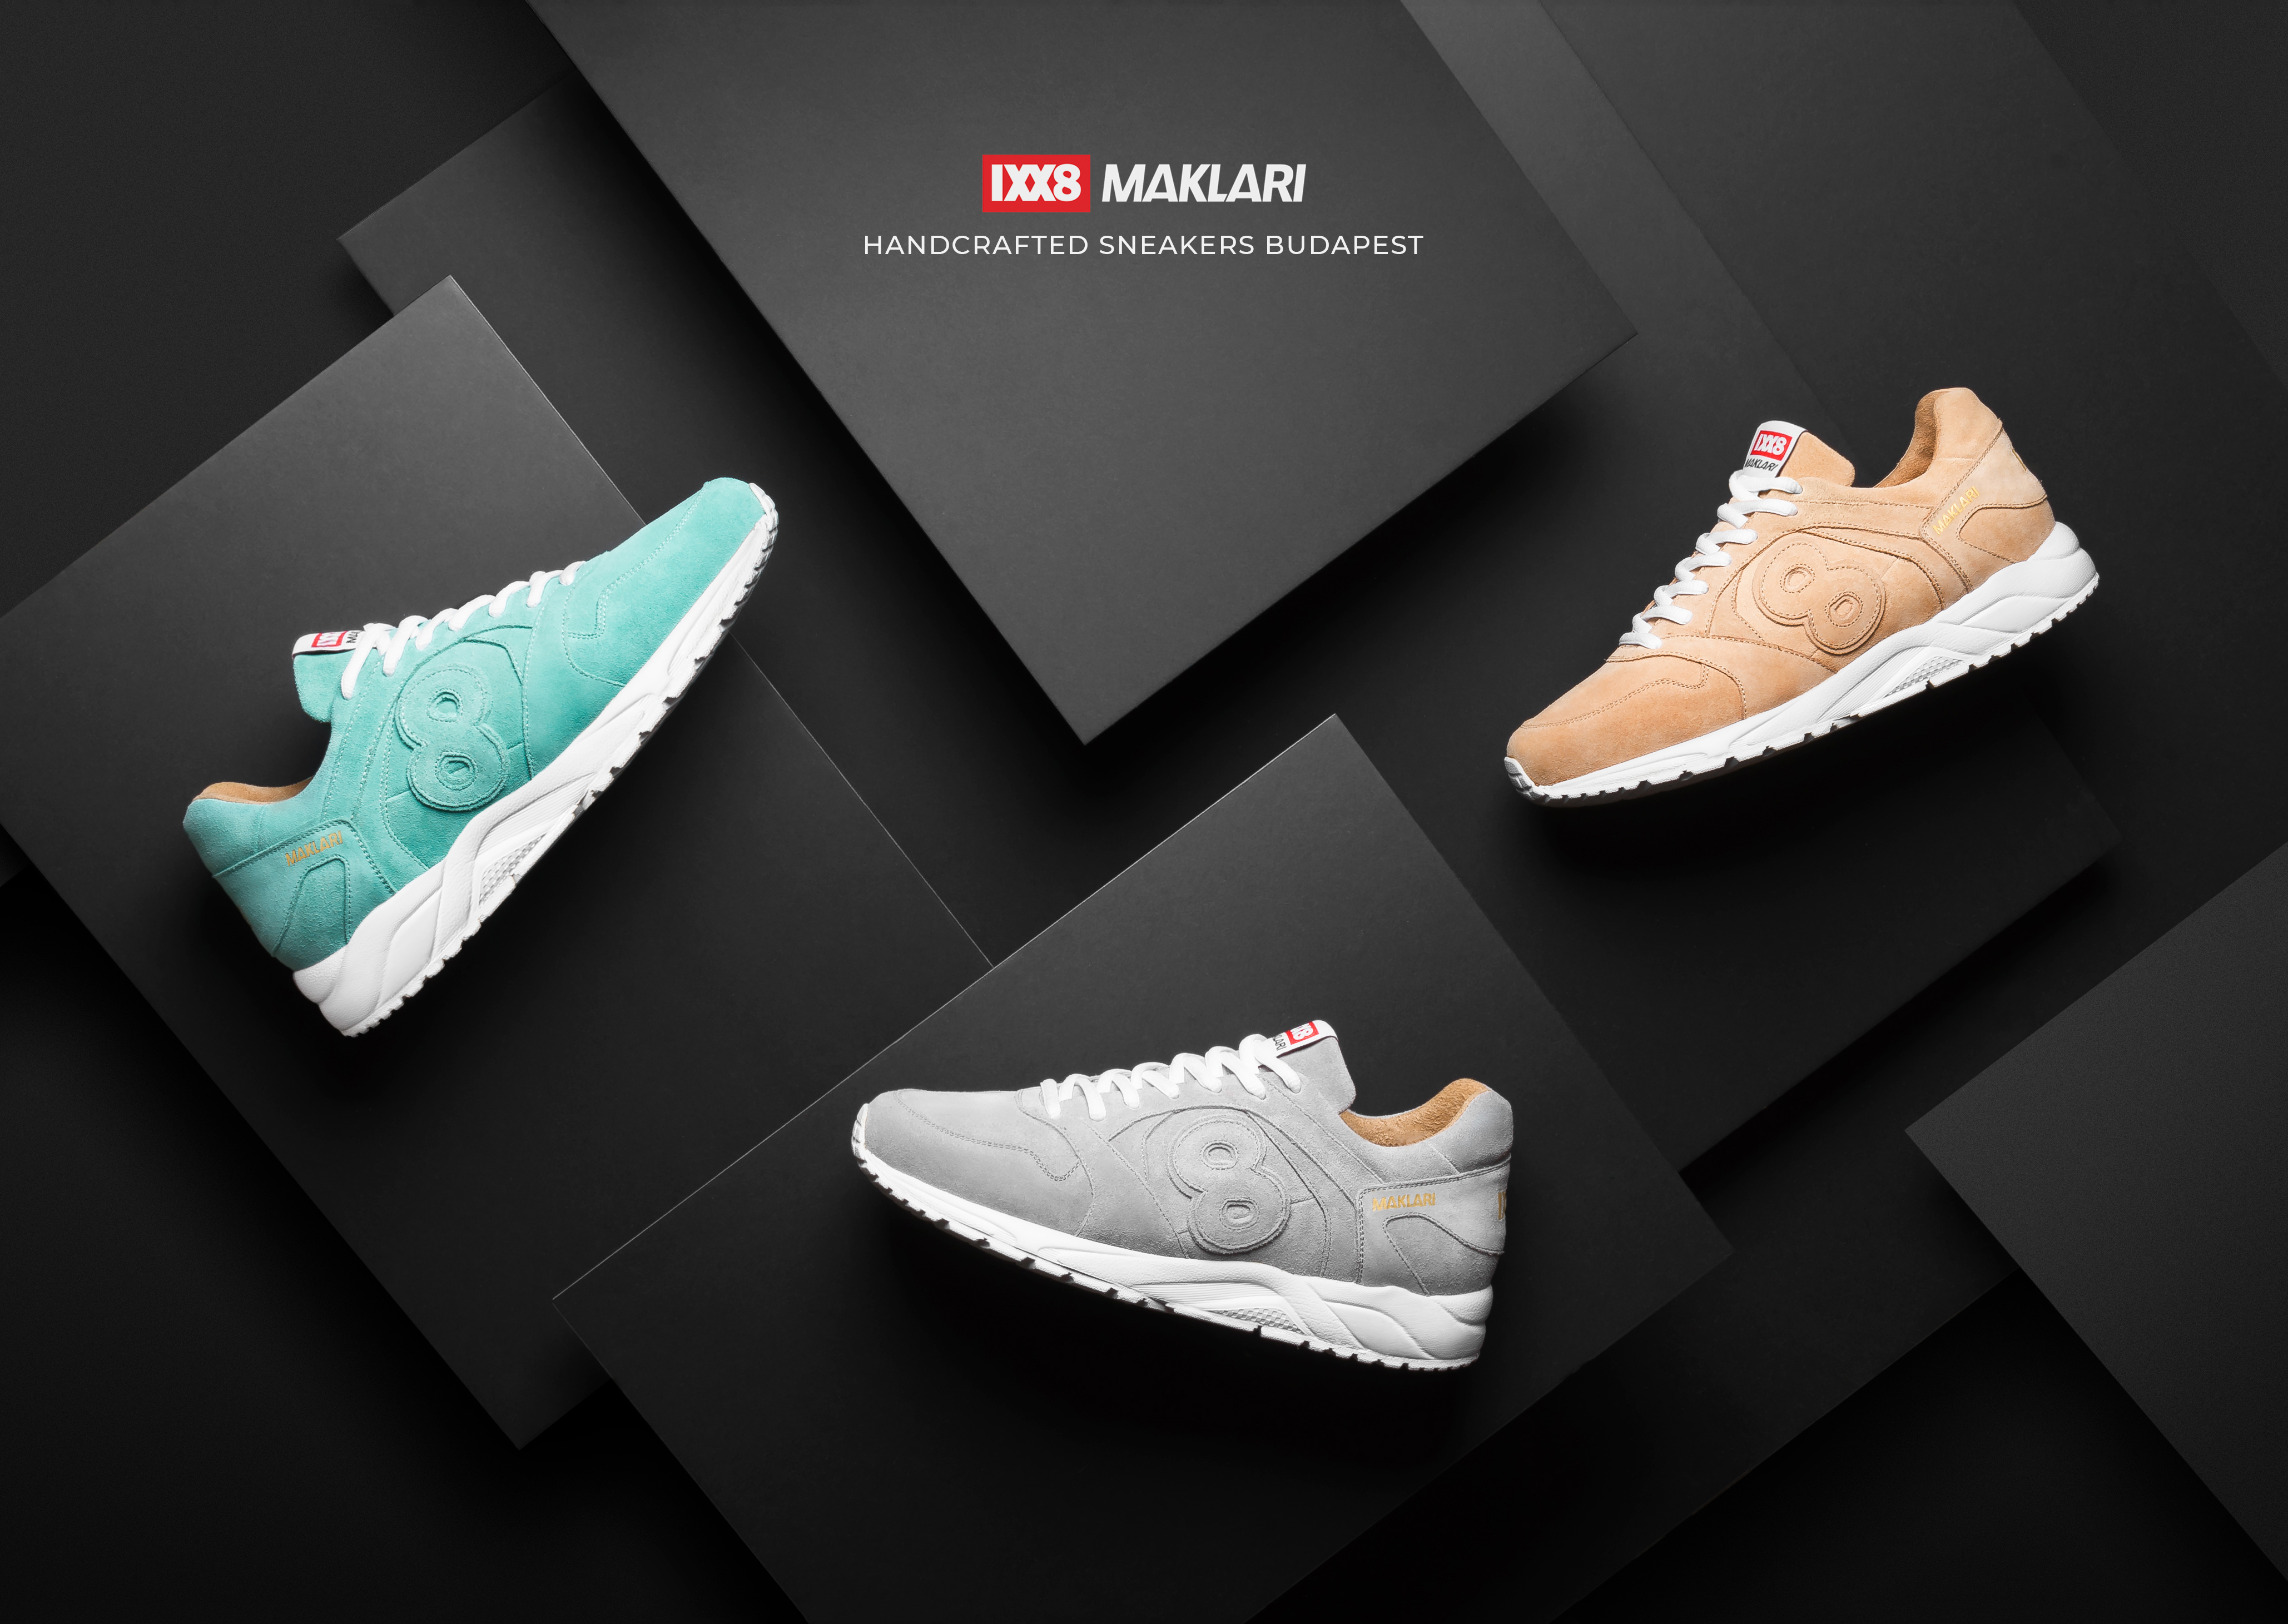 Új hazai cipőmárka – megérkezett az itthon tervezett és gyártott Maklári cipő és az első sneaker kollekció